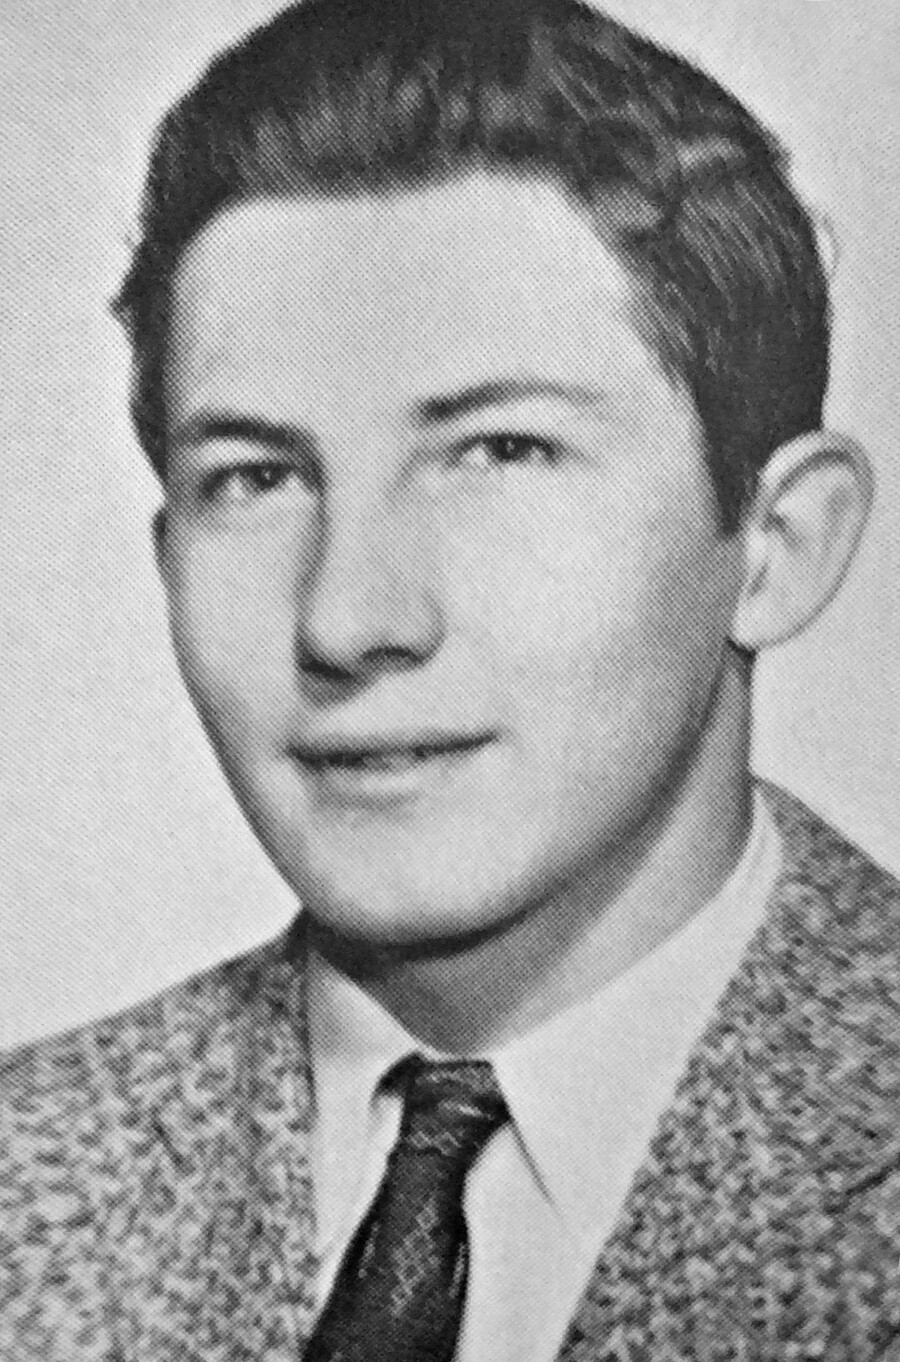 Ein junger Aldrich Ames im Jahrbuch der McLean High School von 1958.